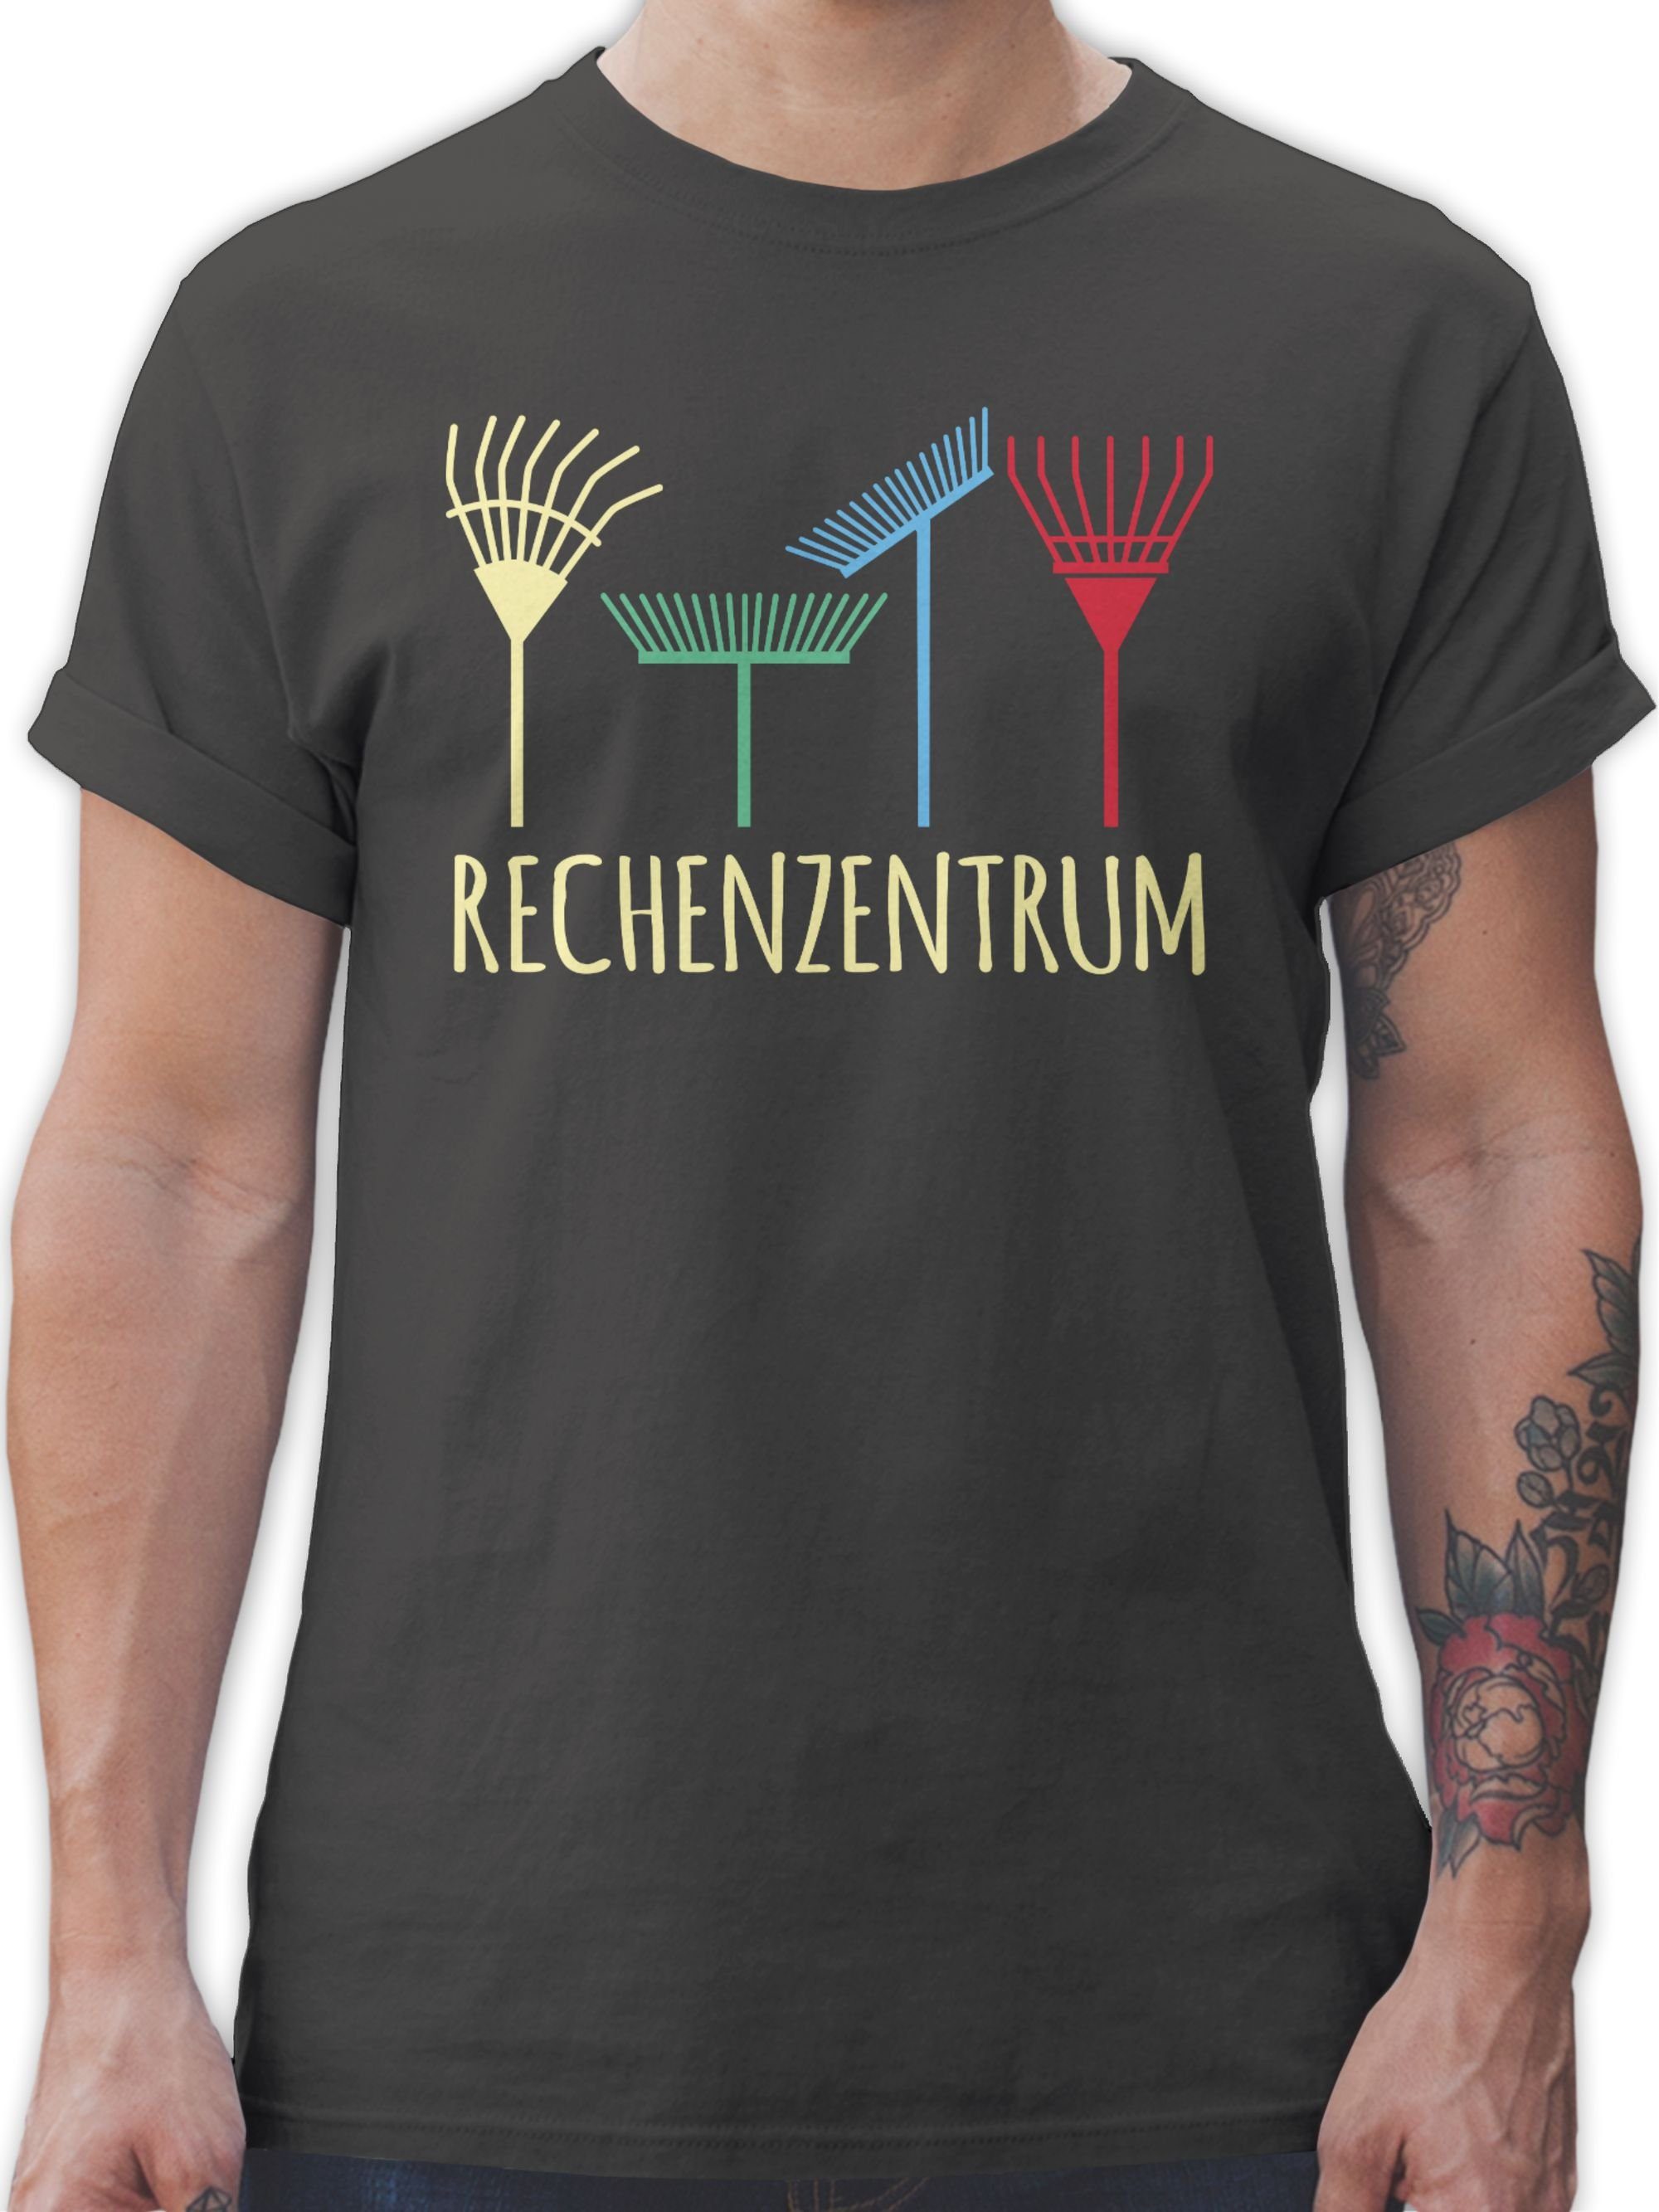 Shirtracer T-Shirt Rechenzentrum - Geschenk Gärtner Gartenarbeit Geschenkidee Hobby Outfit 02 Dunkelgrau